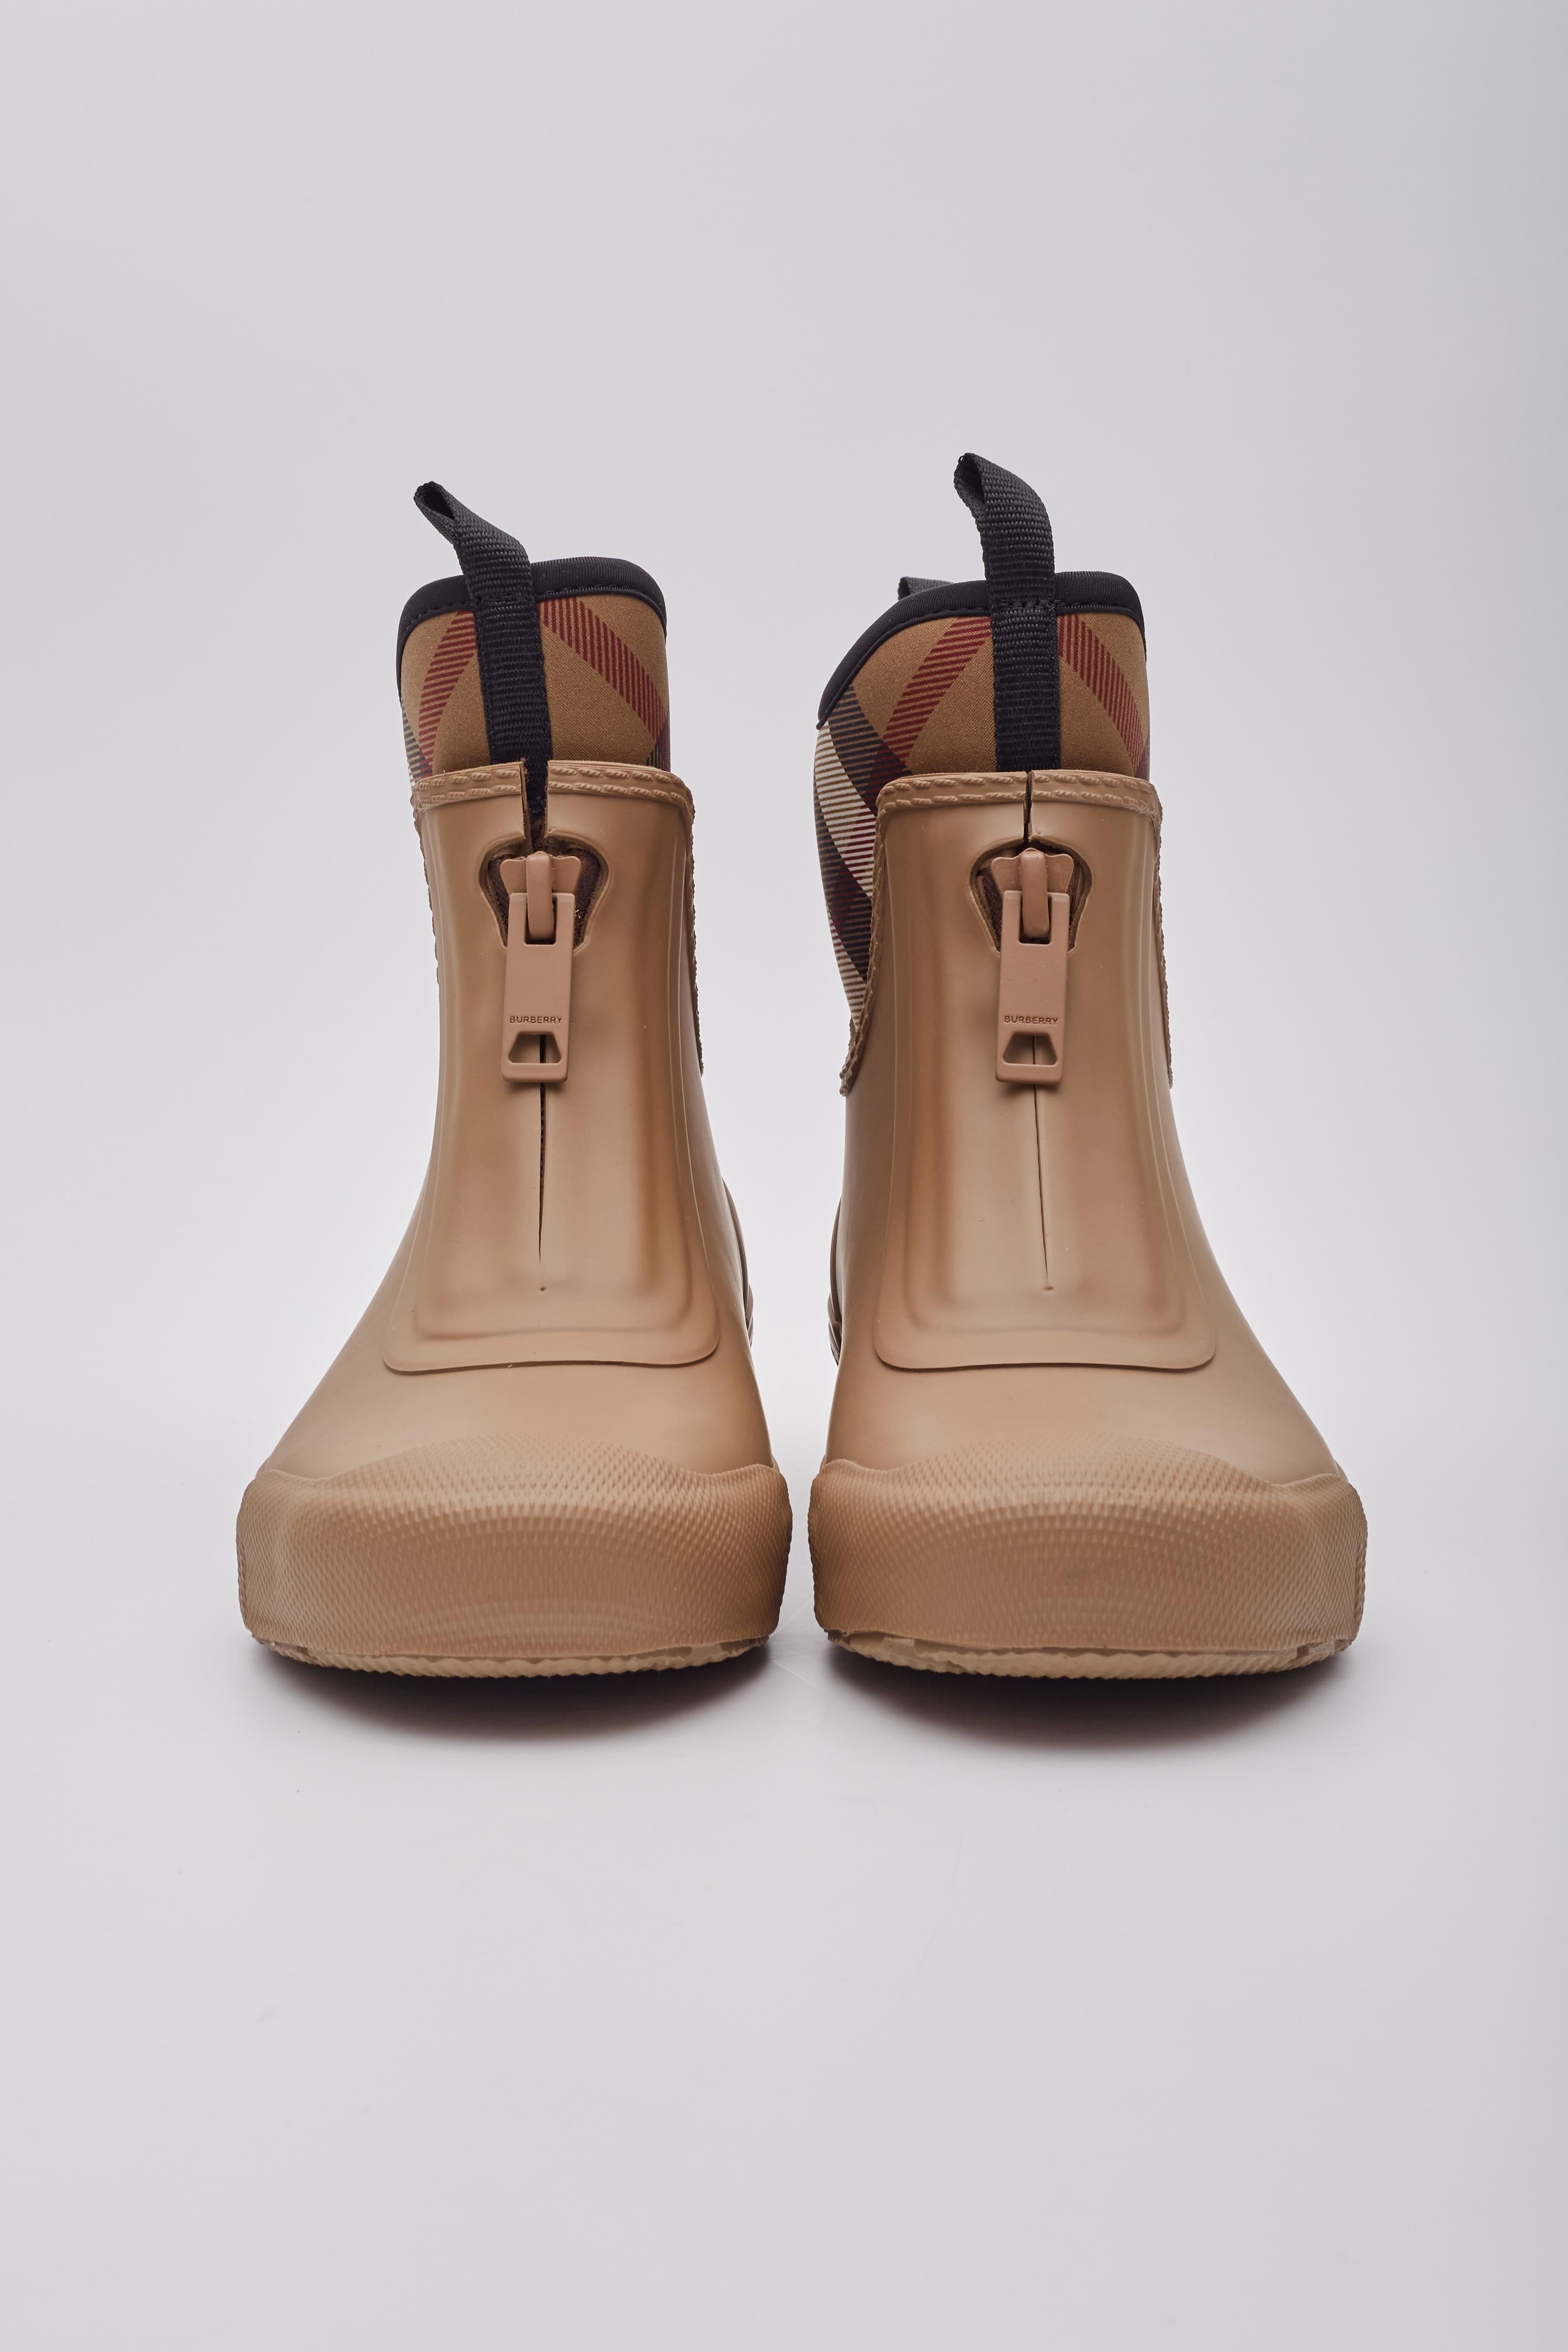 Voici les bottes de pluie de style classique de Burberry. Fabriquées en caoutchouc durable de couleur bouleau, ces bottes sont dotées d'une fermeture à glissière pratique et d'une chaussette amovible en néoprène à carreaux. Cette conception